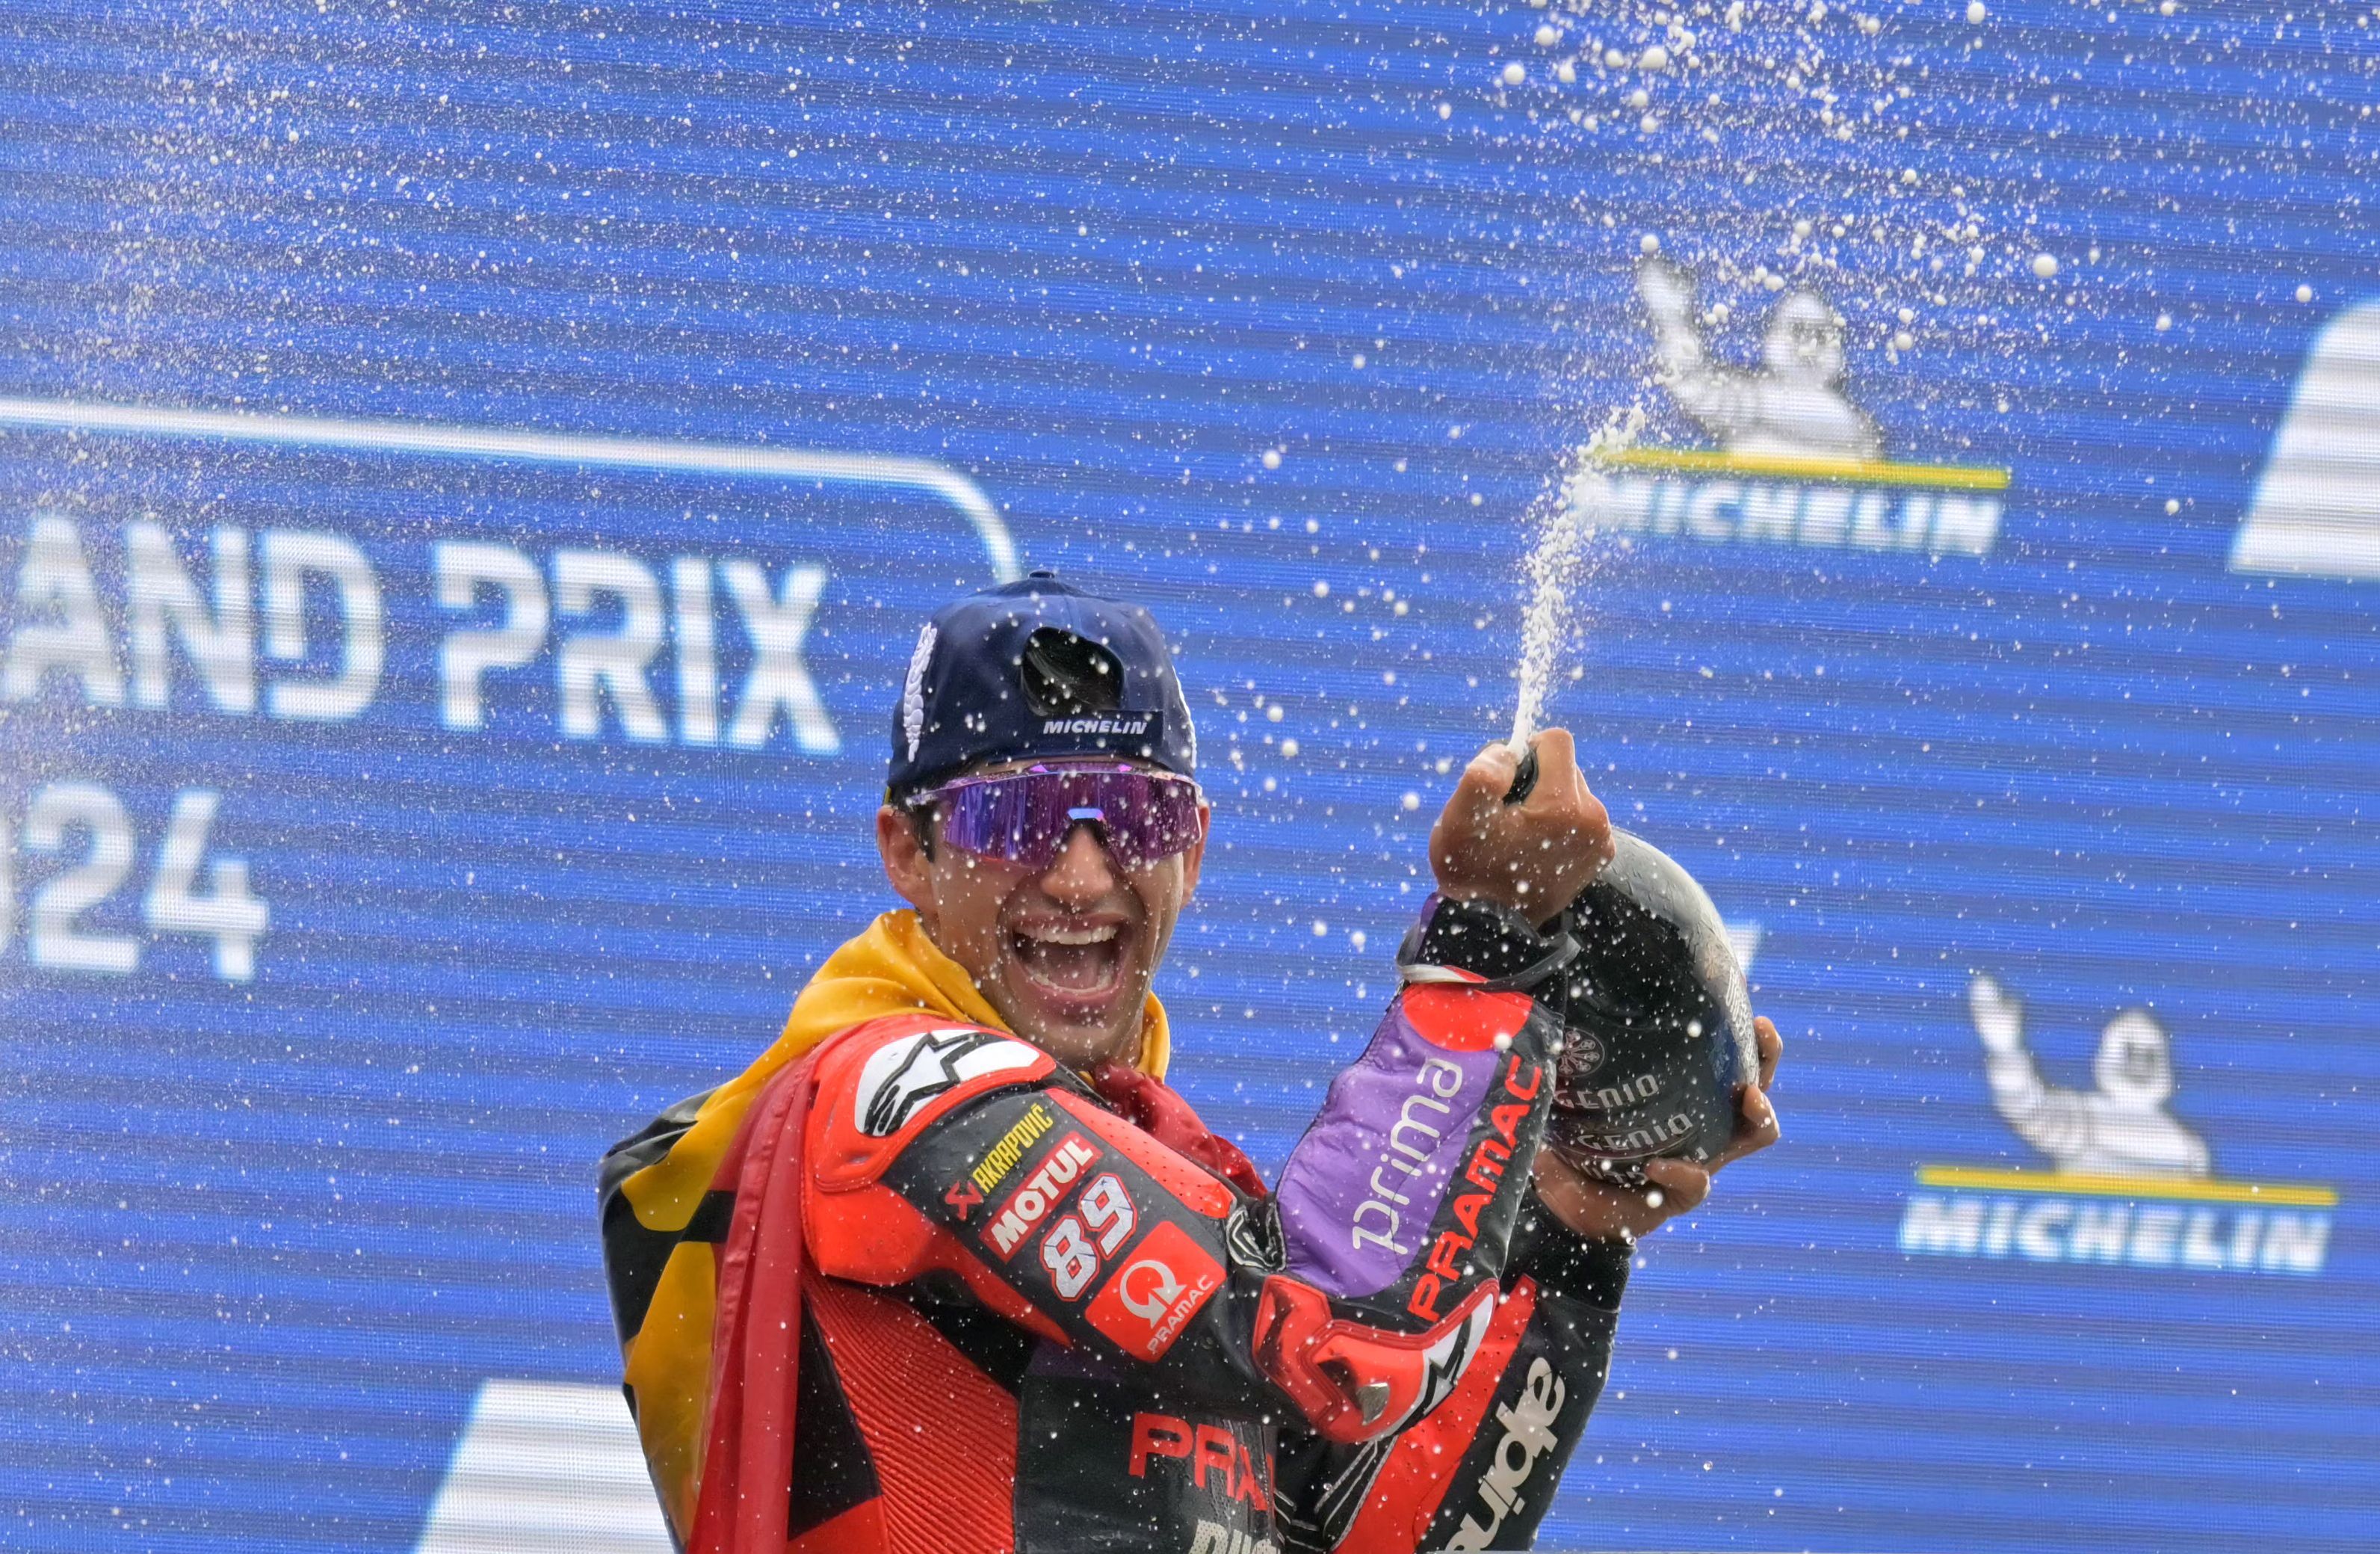 Jorge Martin vainqueur au Mans